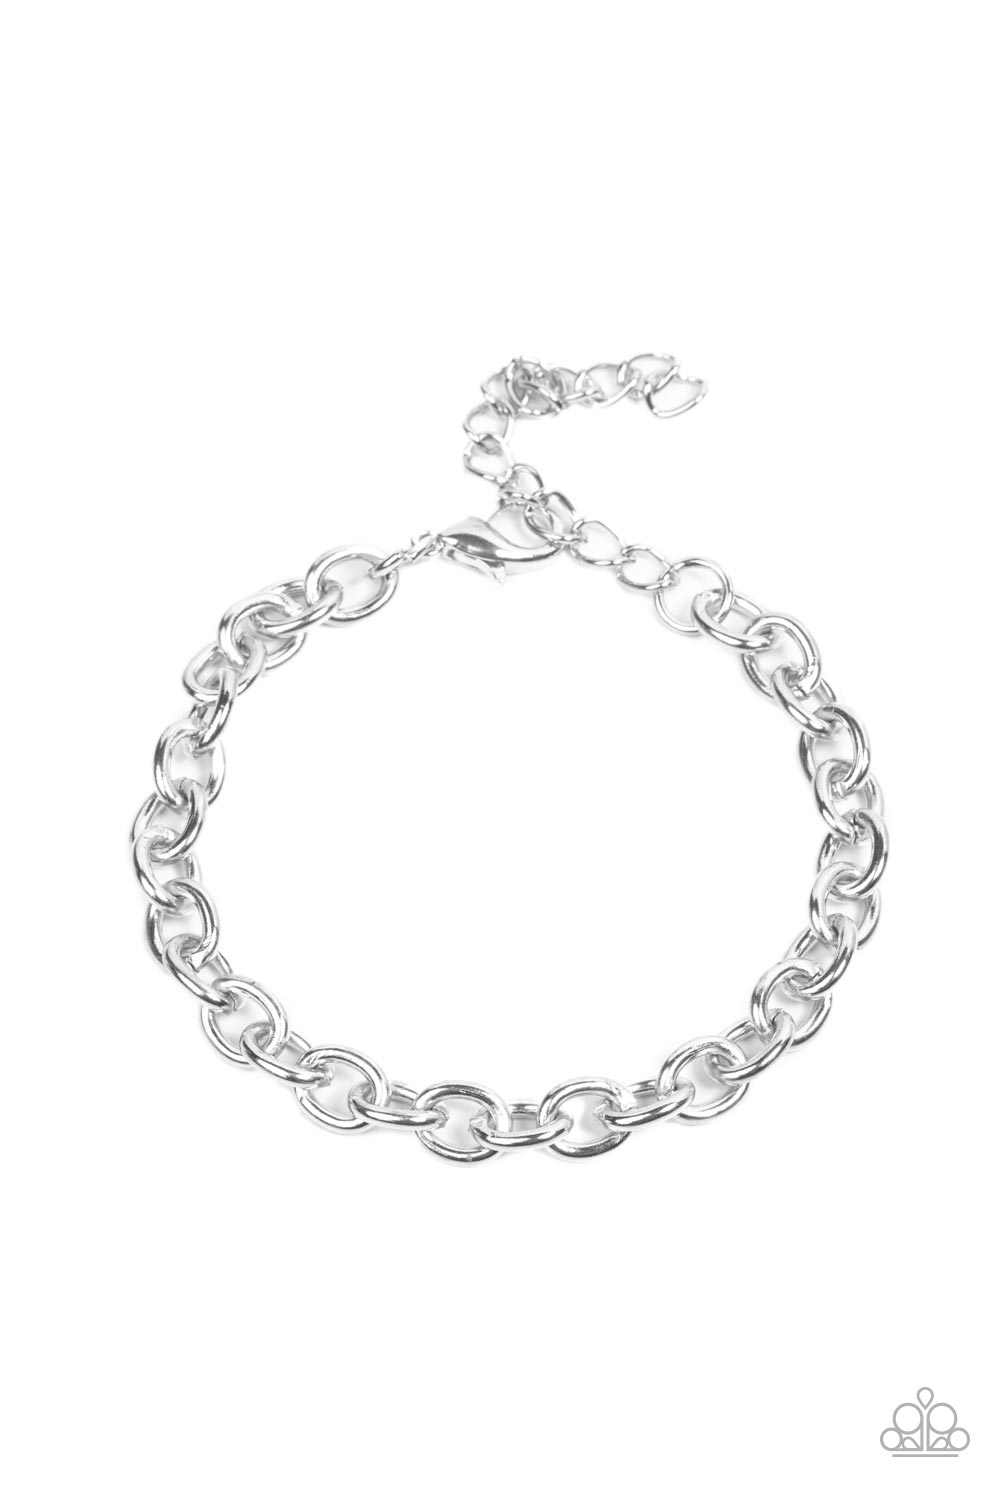 Intrepid Method - Silver Men's Bracelet - Princess Glam Shop